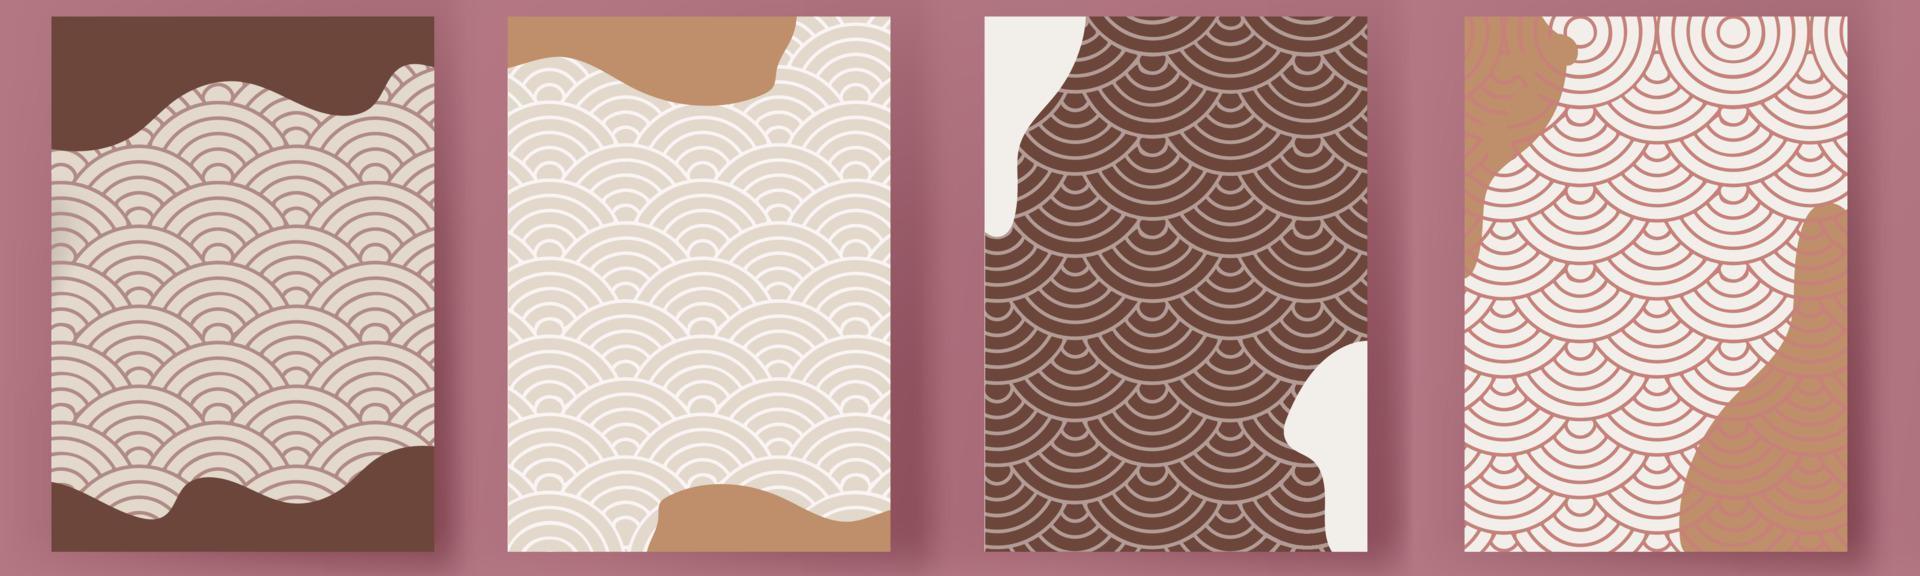 japanische Vorlage moderner minimaler Kunstvektorsatz. geometrische karte hintergrund set.abstract cover design banner broschüre stil. vektor